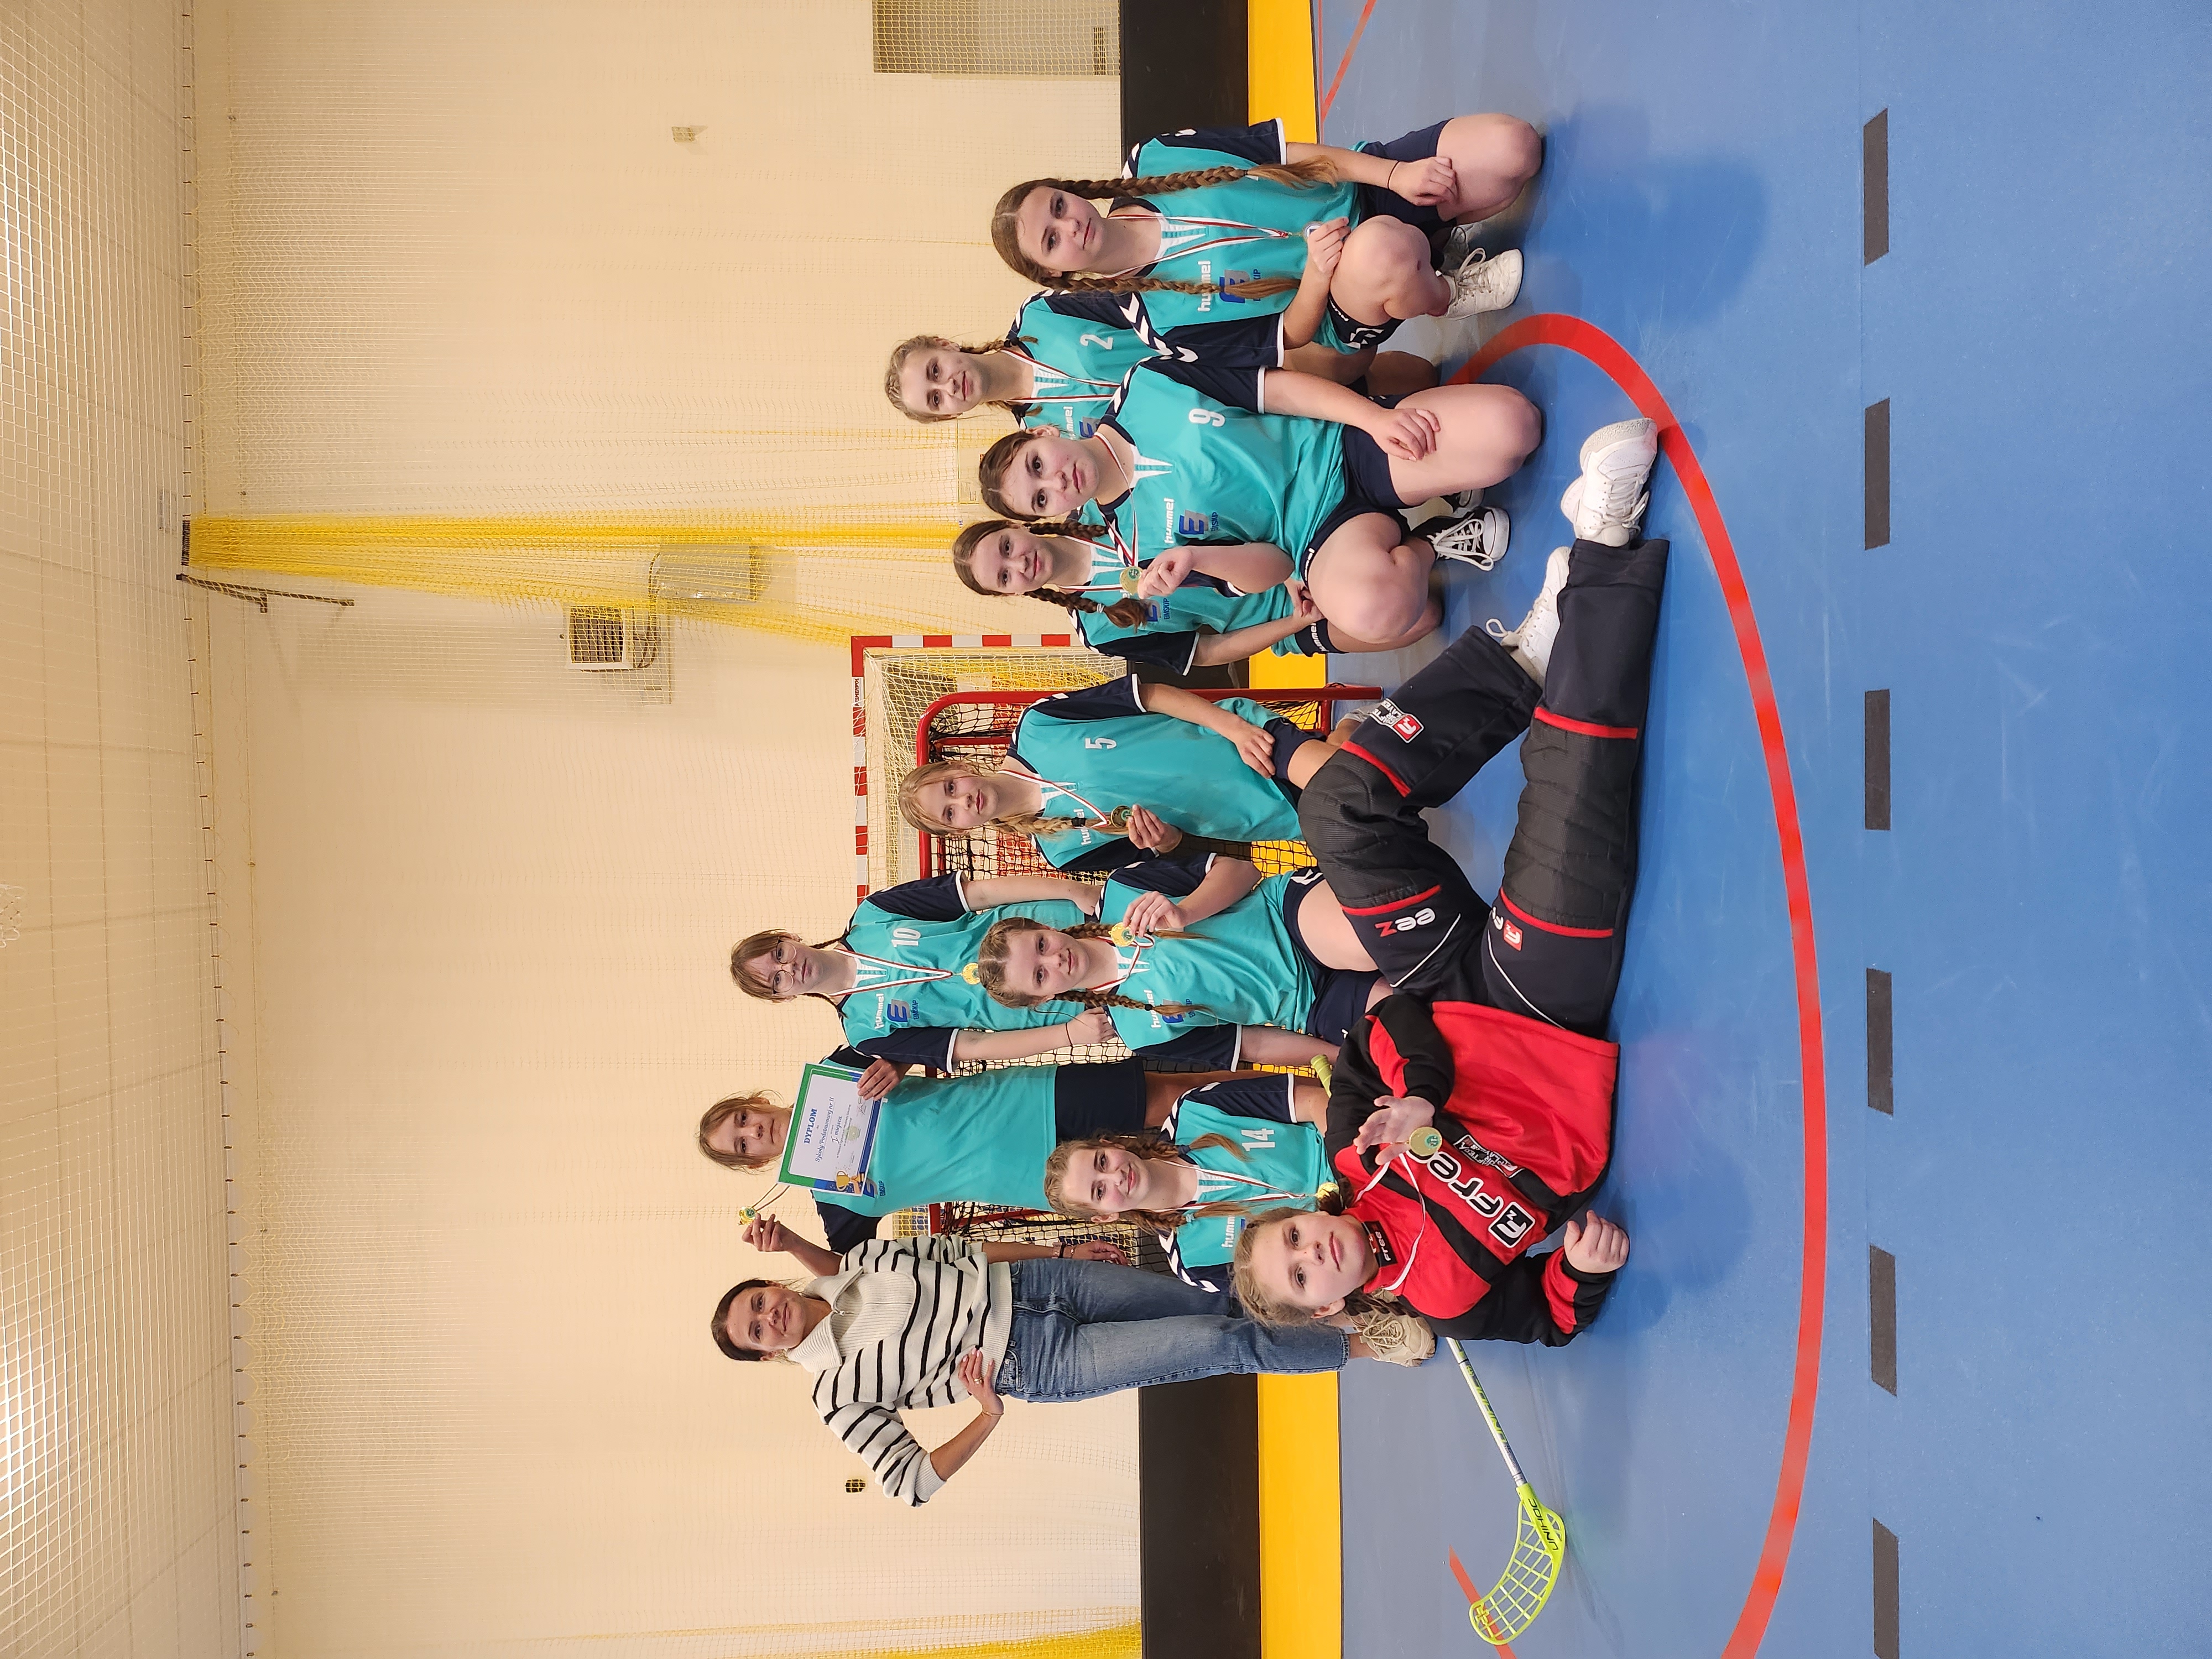 Drużyna dziewcząt na sali gimnastycznej. 10 uczennic w turkusowych strojach stoi razem z trenerką. Na szyjach i w rękach złote medale.